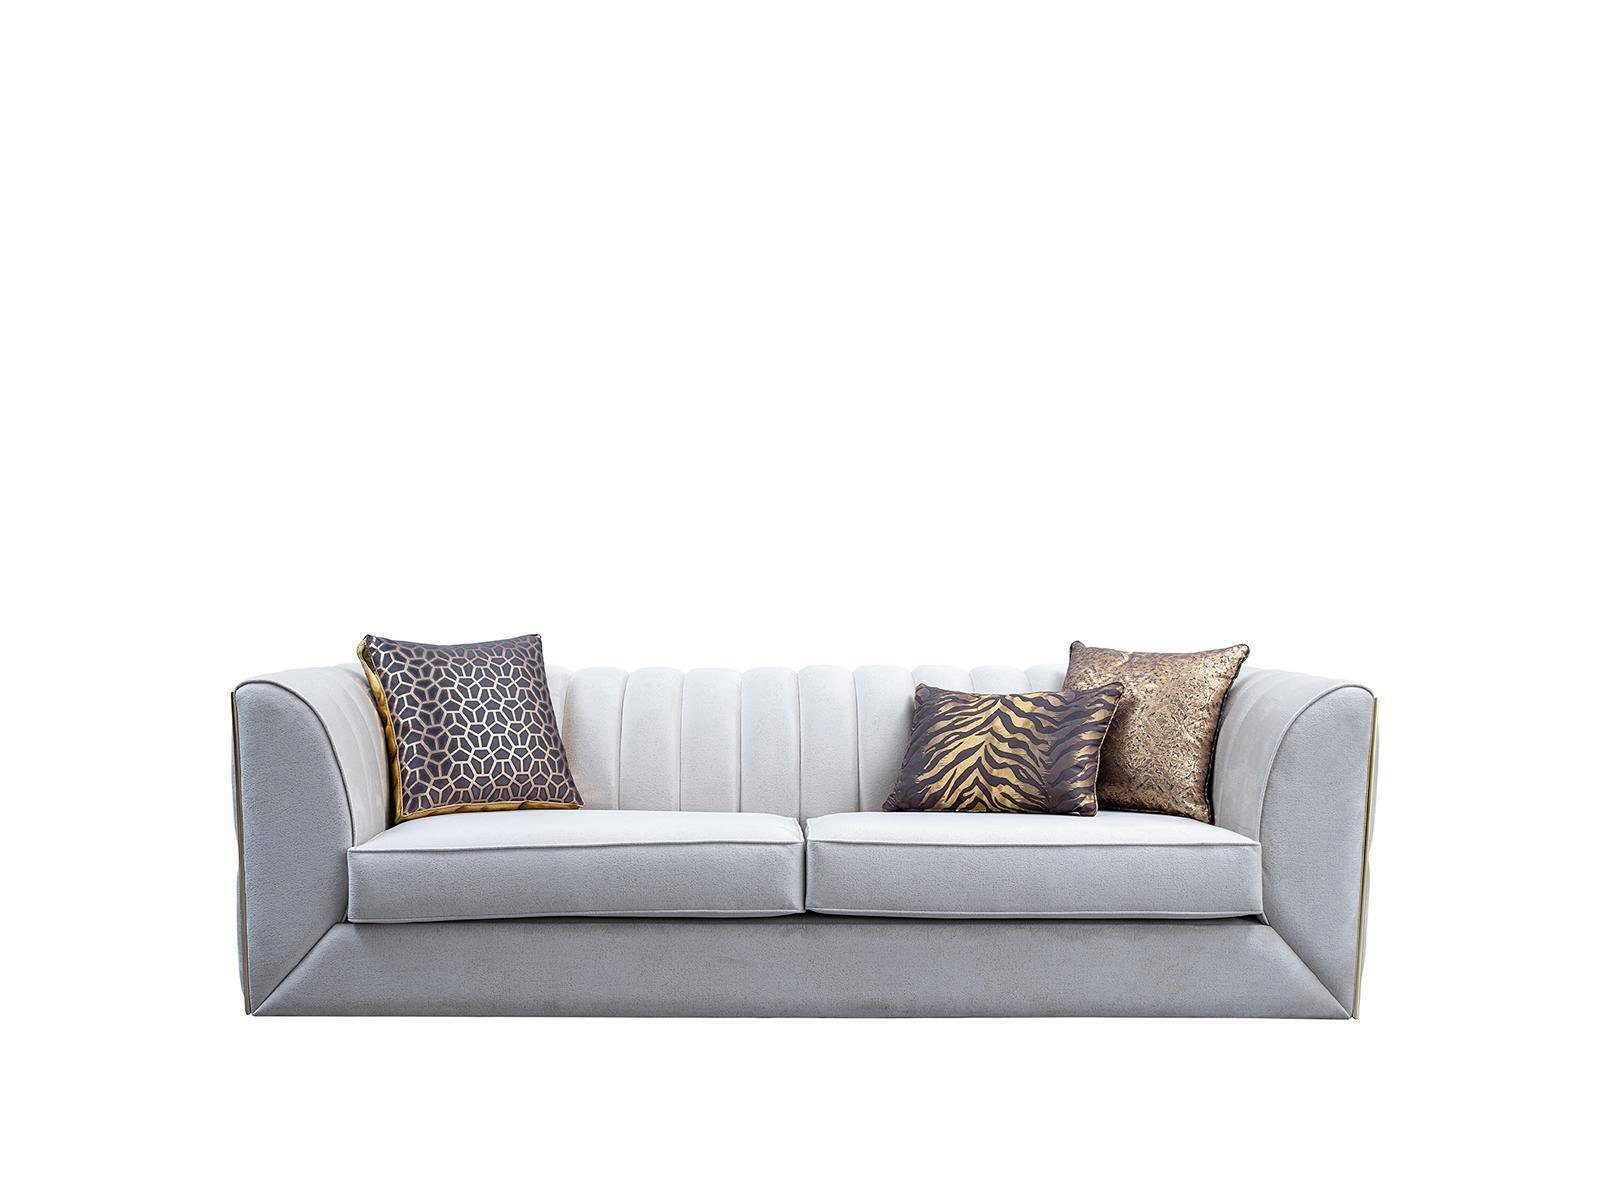 Weißer Dreisitzer in Polstermöbel, 1 Couch Teile, Textilmöbel Wohnzimmer Edelstahl Made Europe Sofa JVmoebel